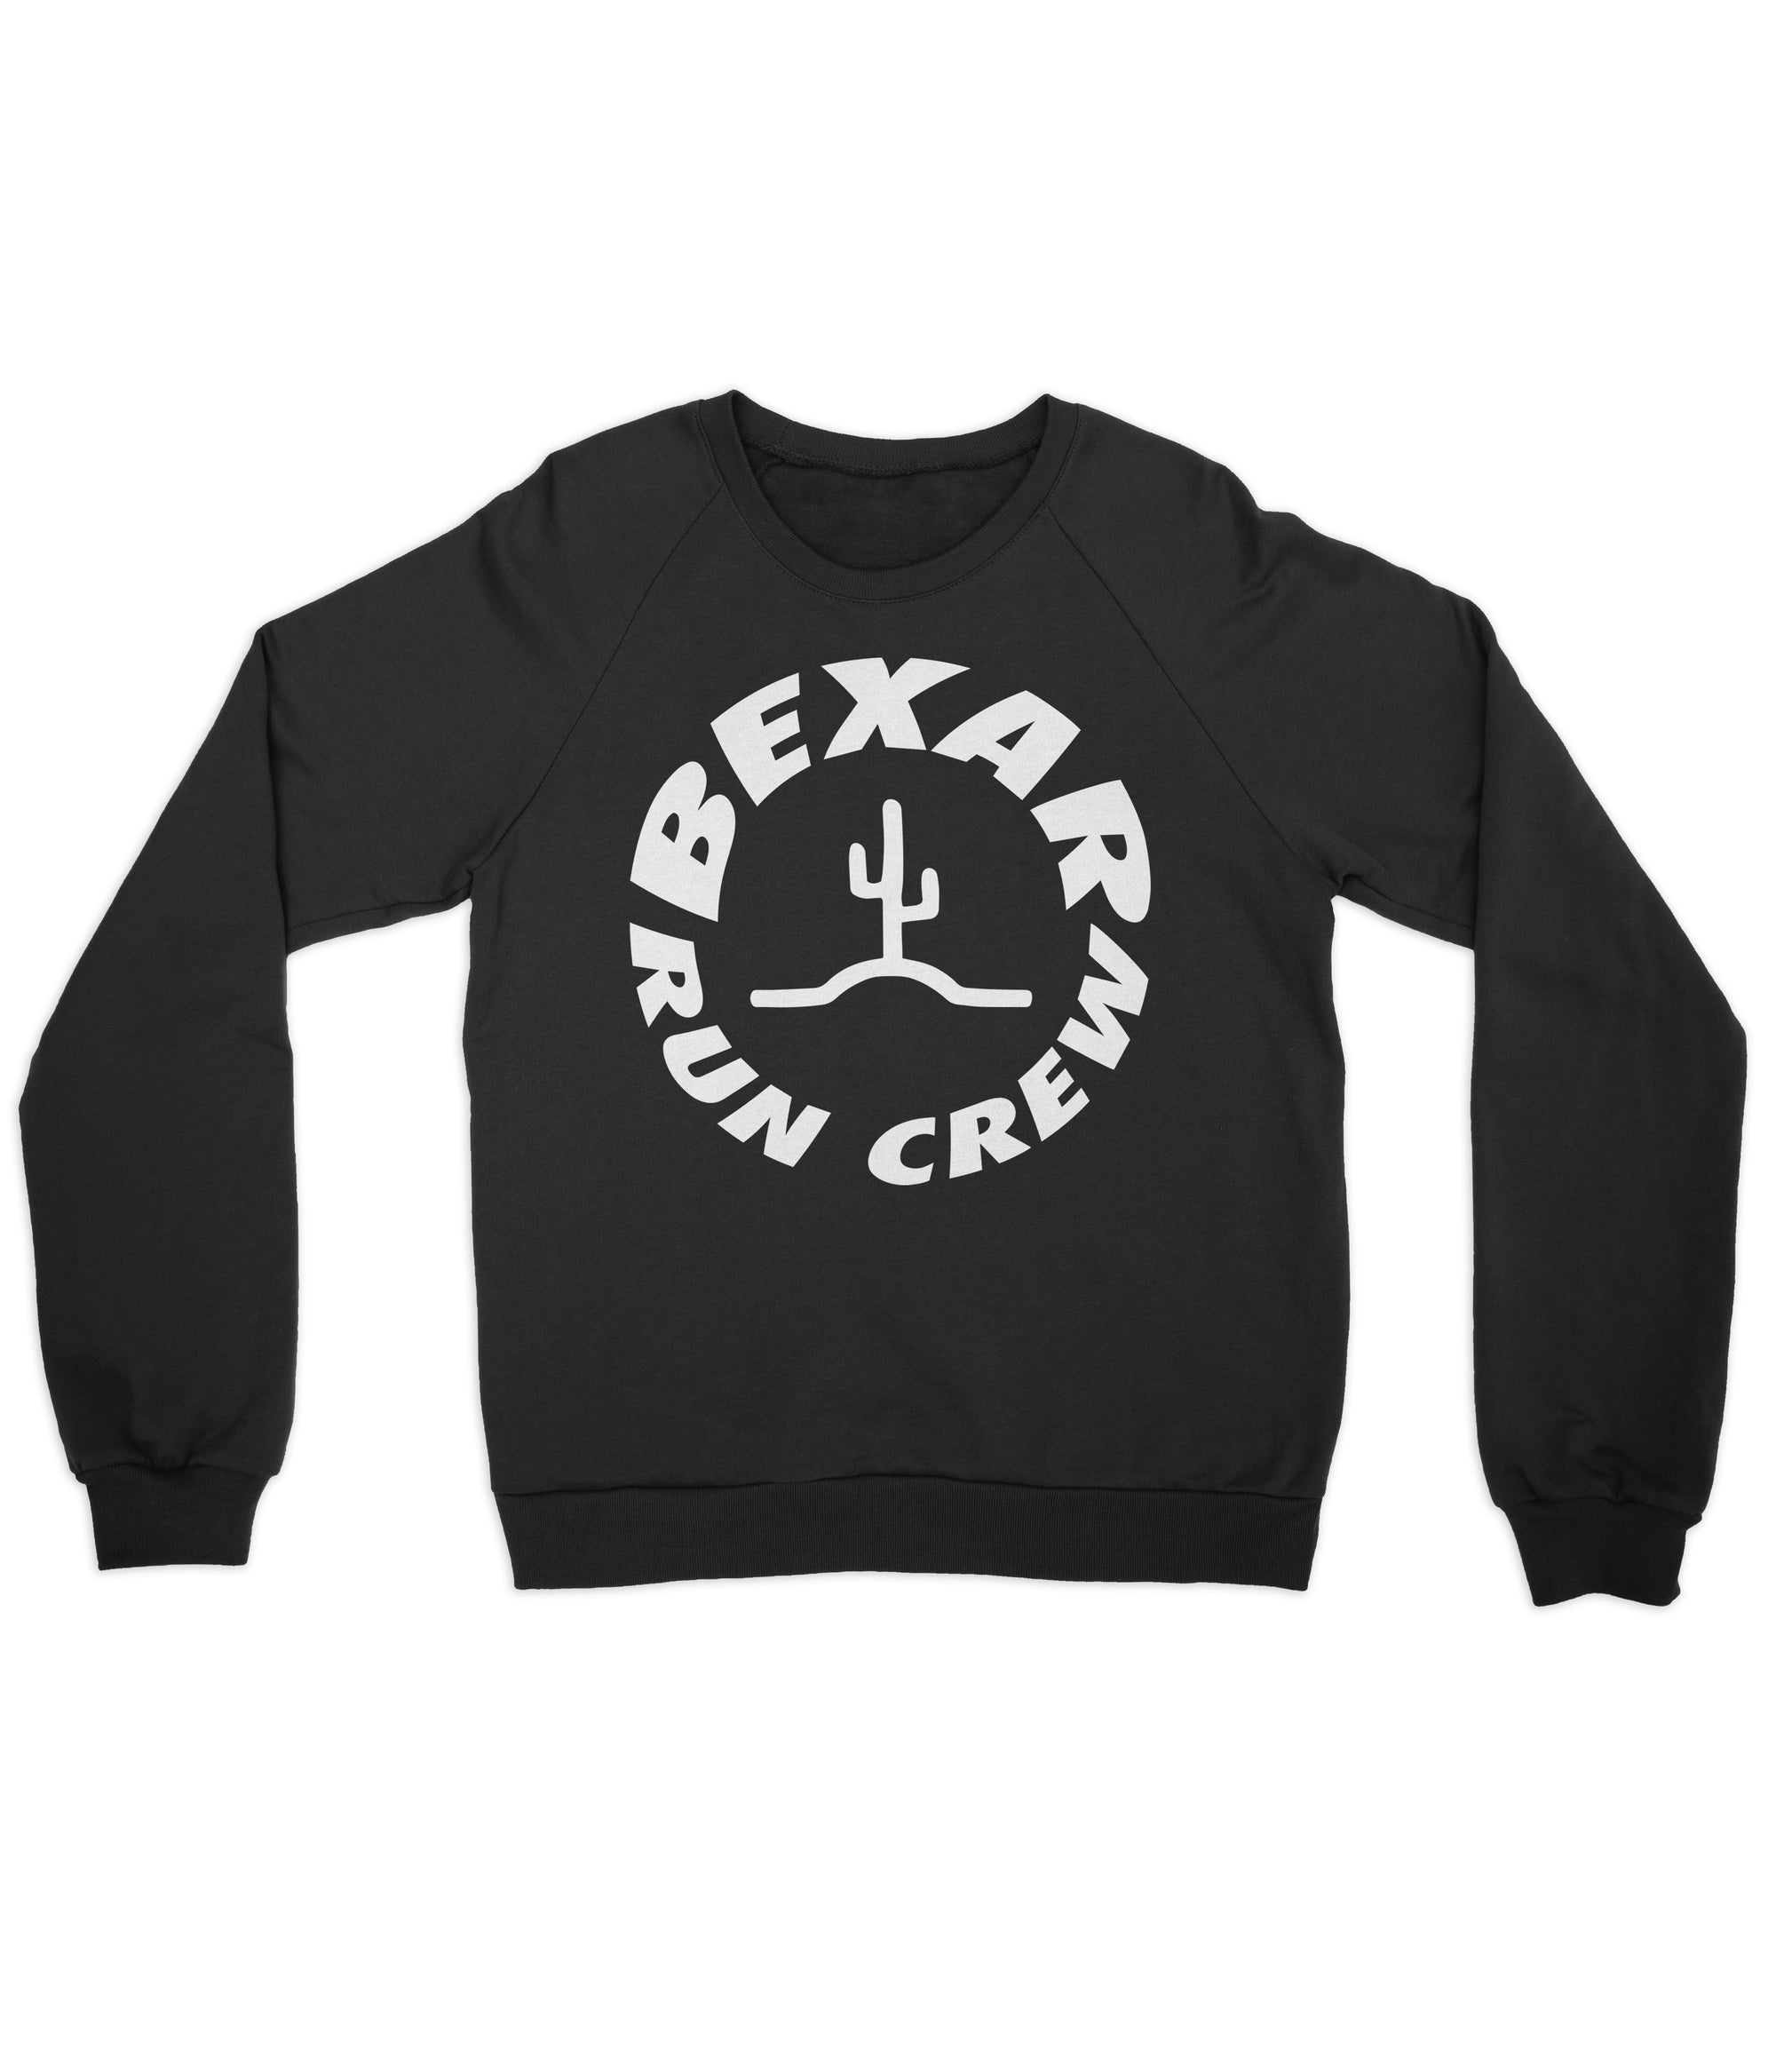 Bexar Run Crew Sweatshirt